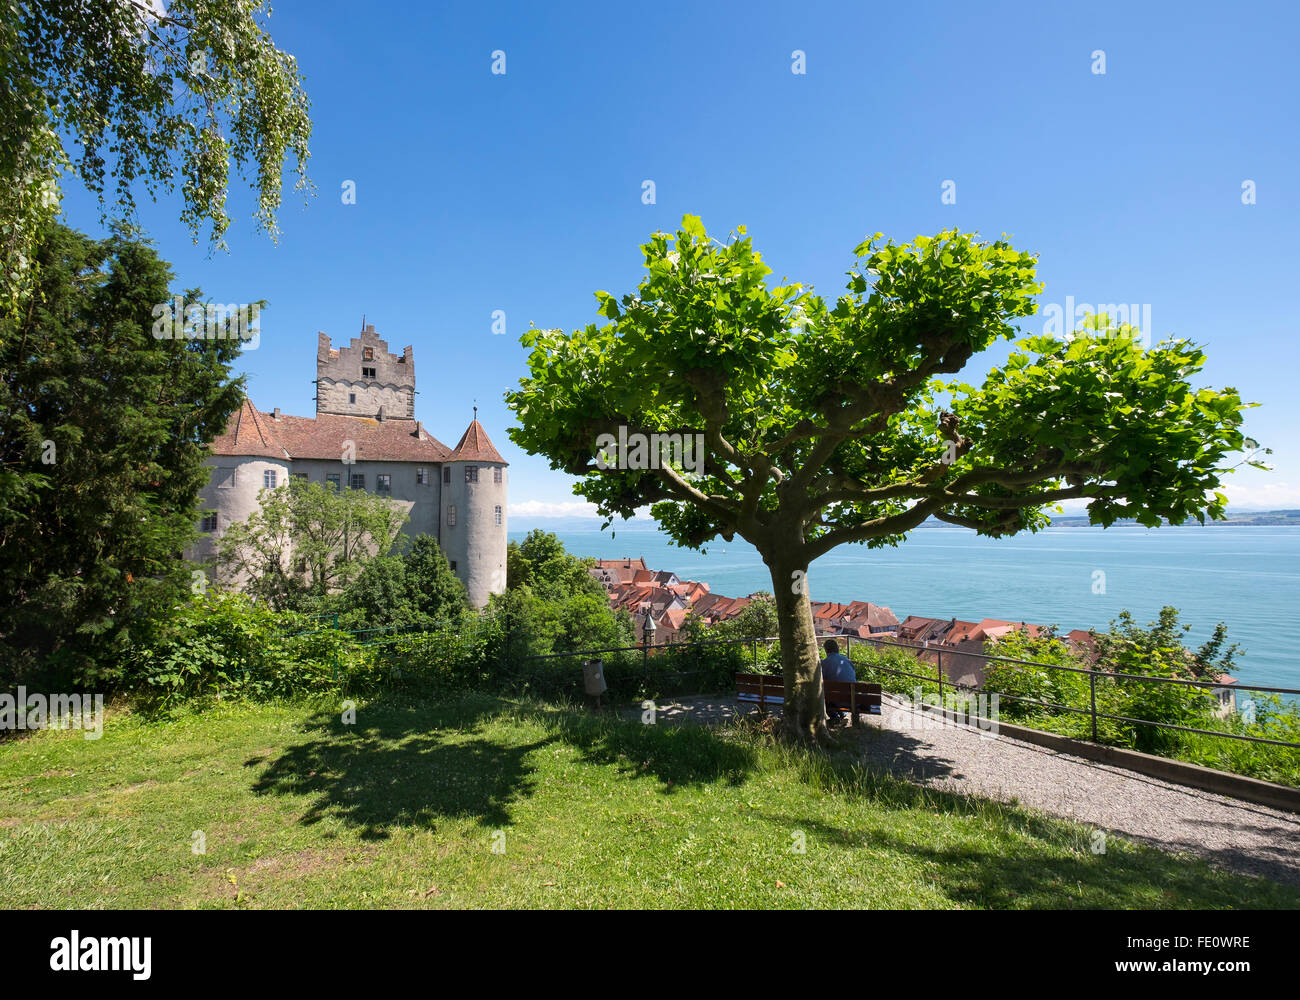 Alte Burg or Meersburg Castle, Meersburg, Lake Constance, Bodenseekreis, Upper Swabia, Baden-Württemberg, Germany Stock Photo